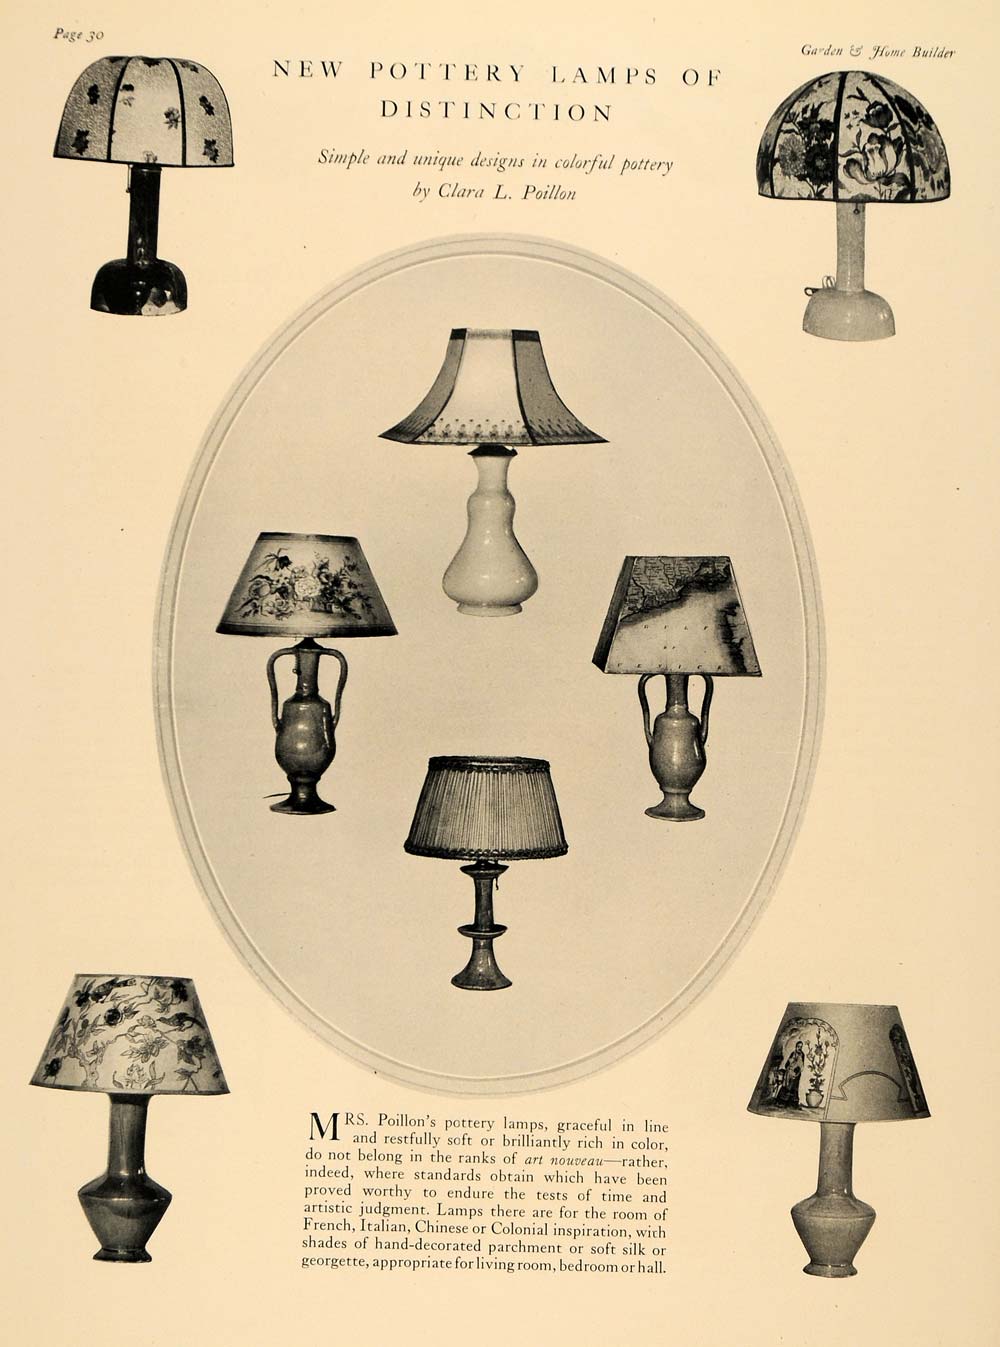 1928 Print Pottery Lamps Clara L. Poillon Home Decor - ORIGINAL HISTORIC GHB1